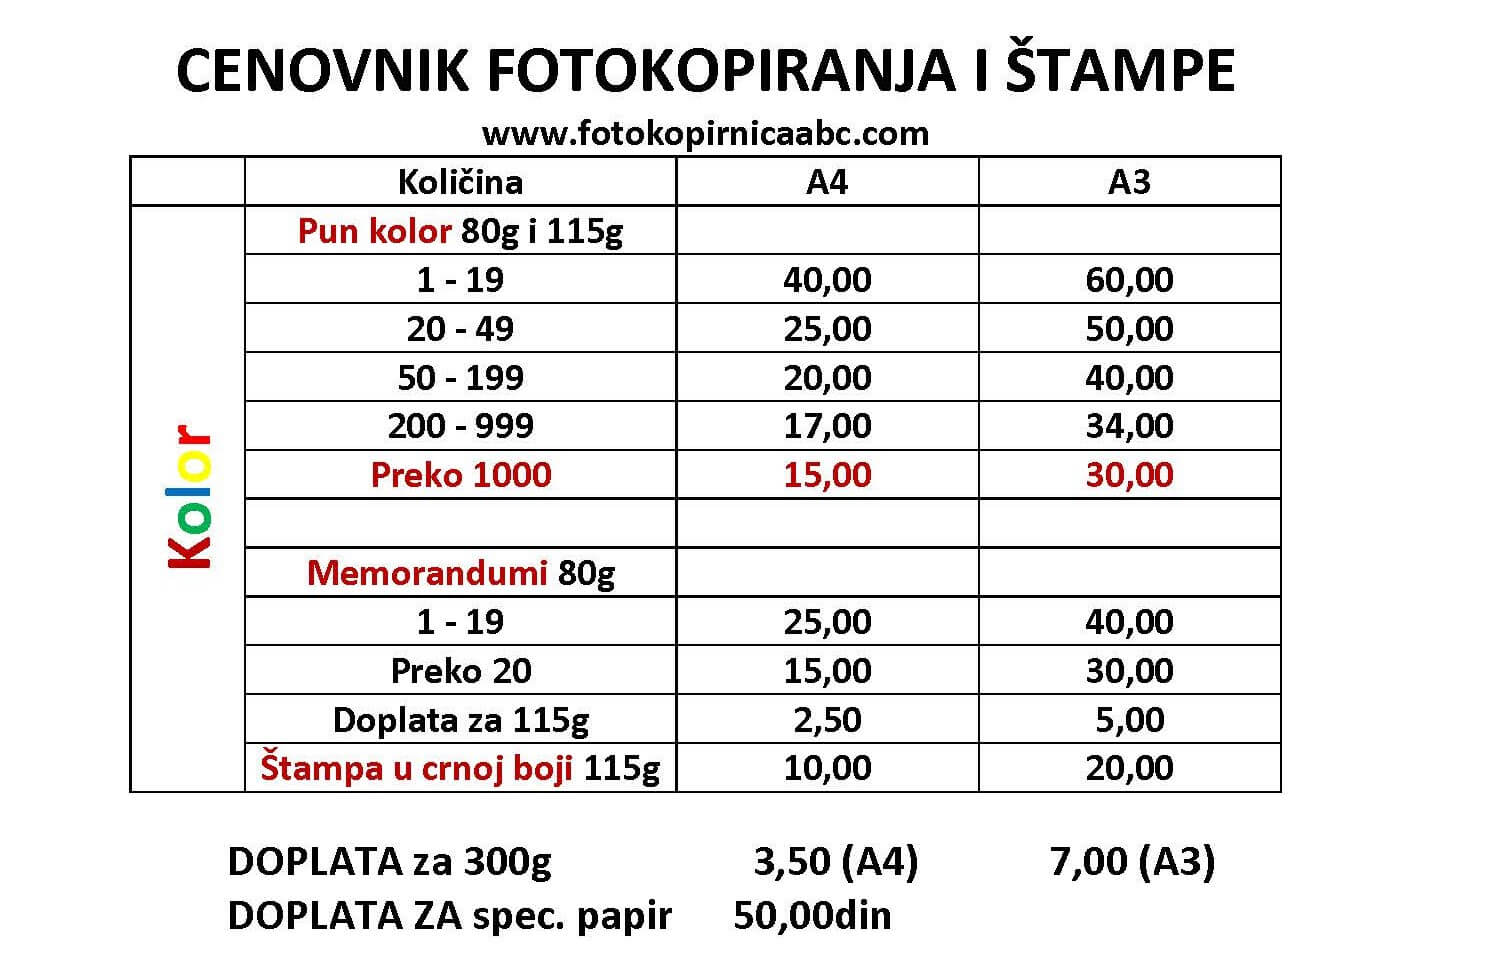 Cenovnik fotokopiranja i štampe Novi Sad ABC studio